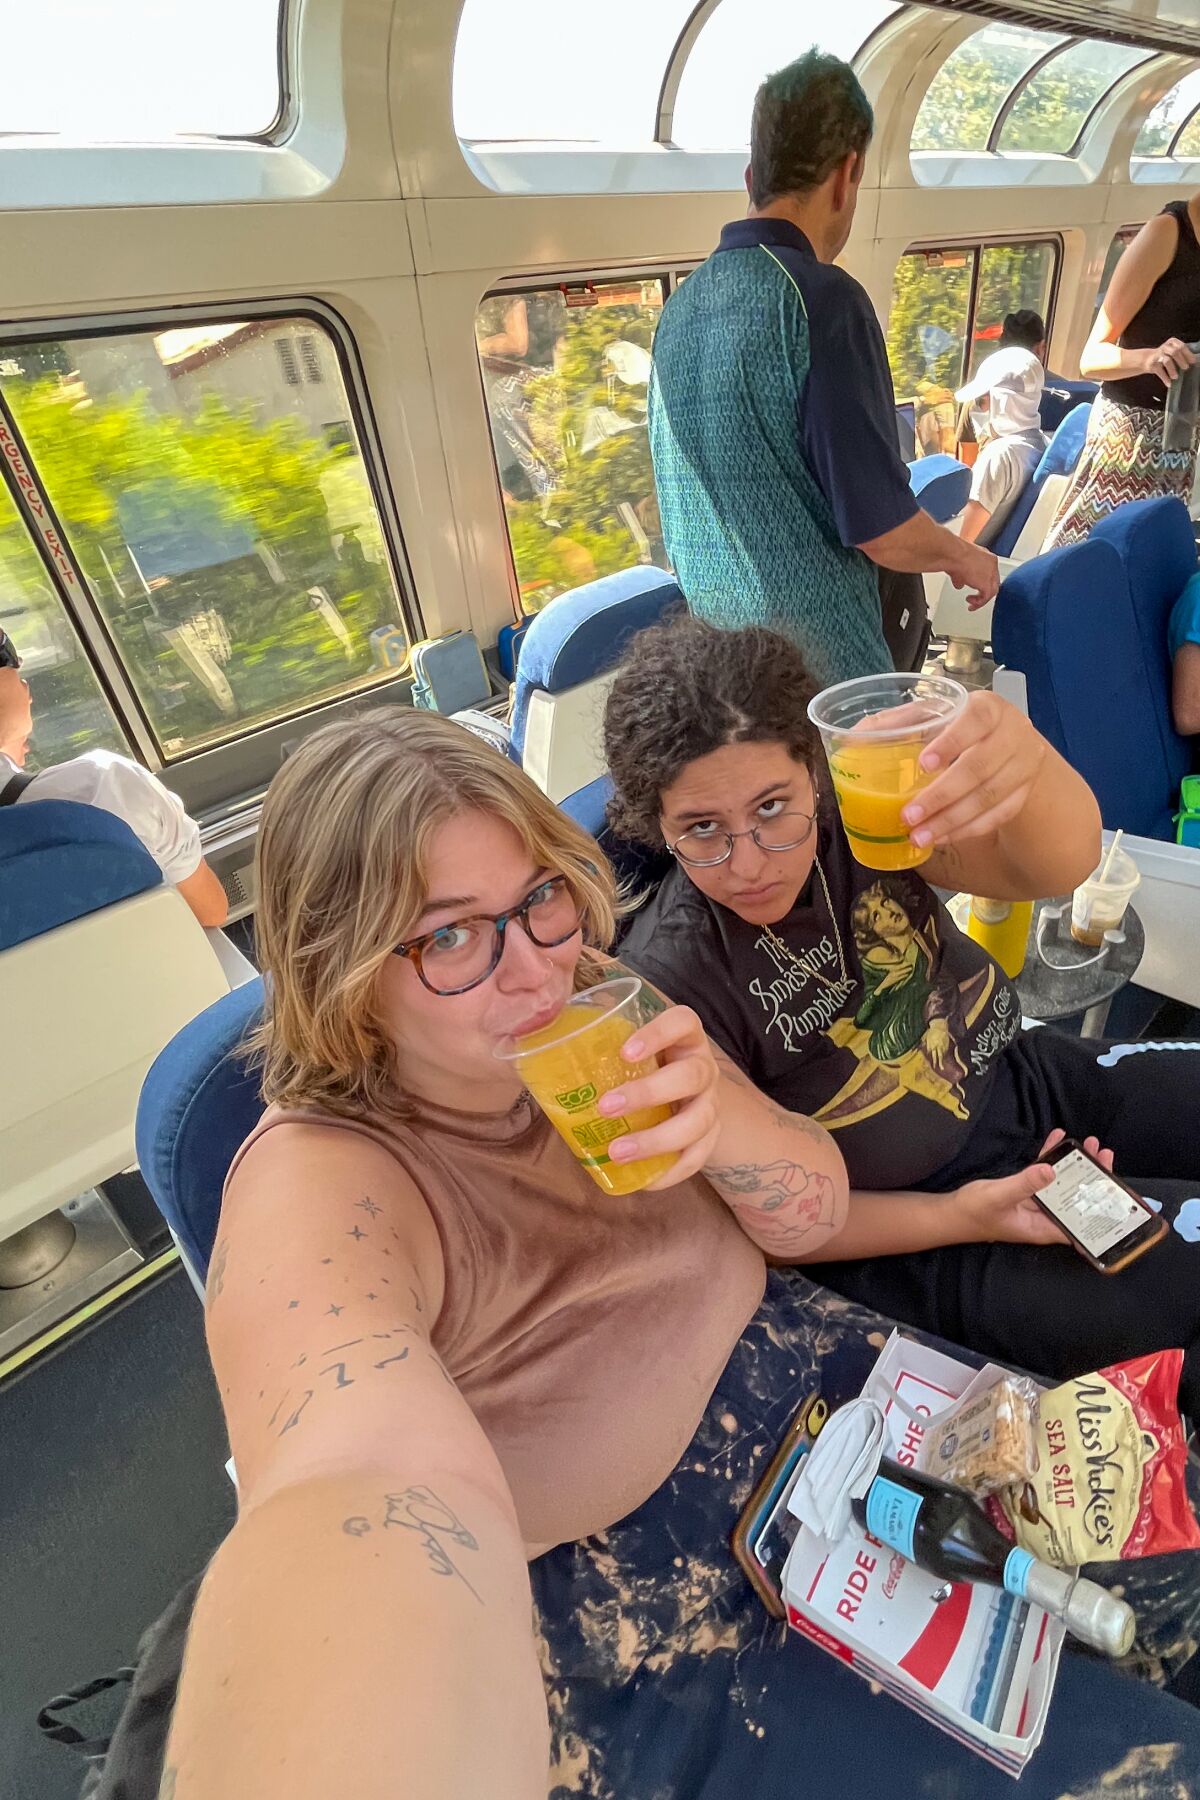 two women take a selfie holding drinks in a train